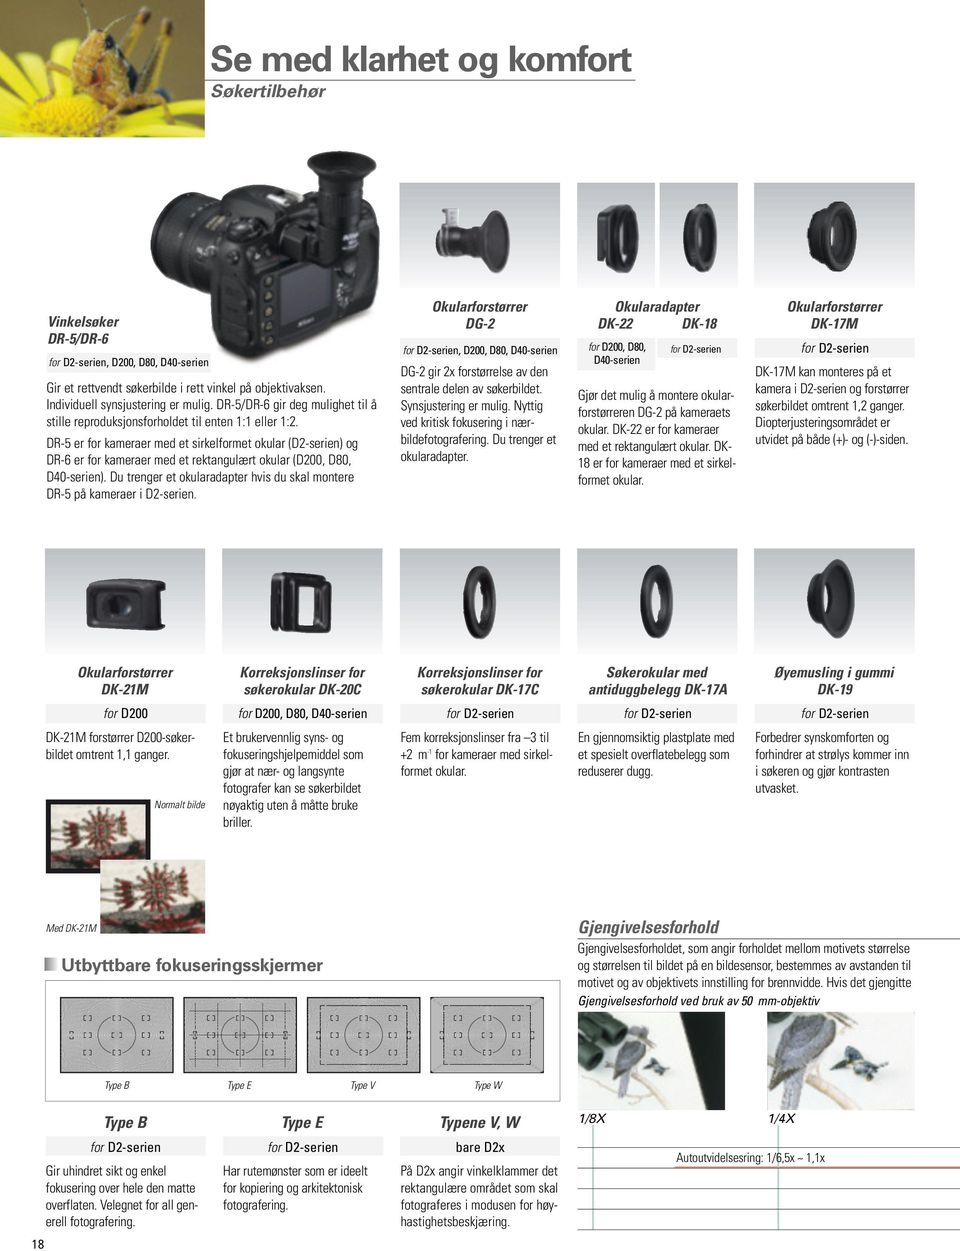 DR-5 er for kameraer med et sirkelformet okular (D2-serien) og DR-6 er for kameraer med et rektangulært okular (D200, D80, D40-serien).